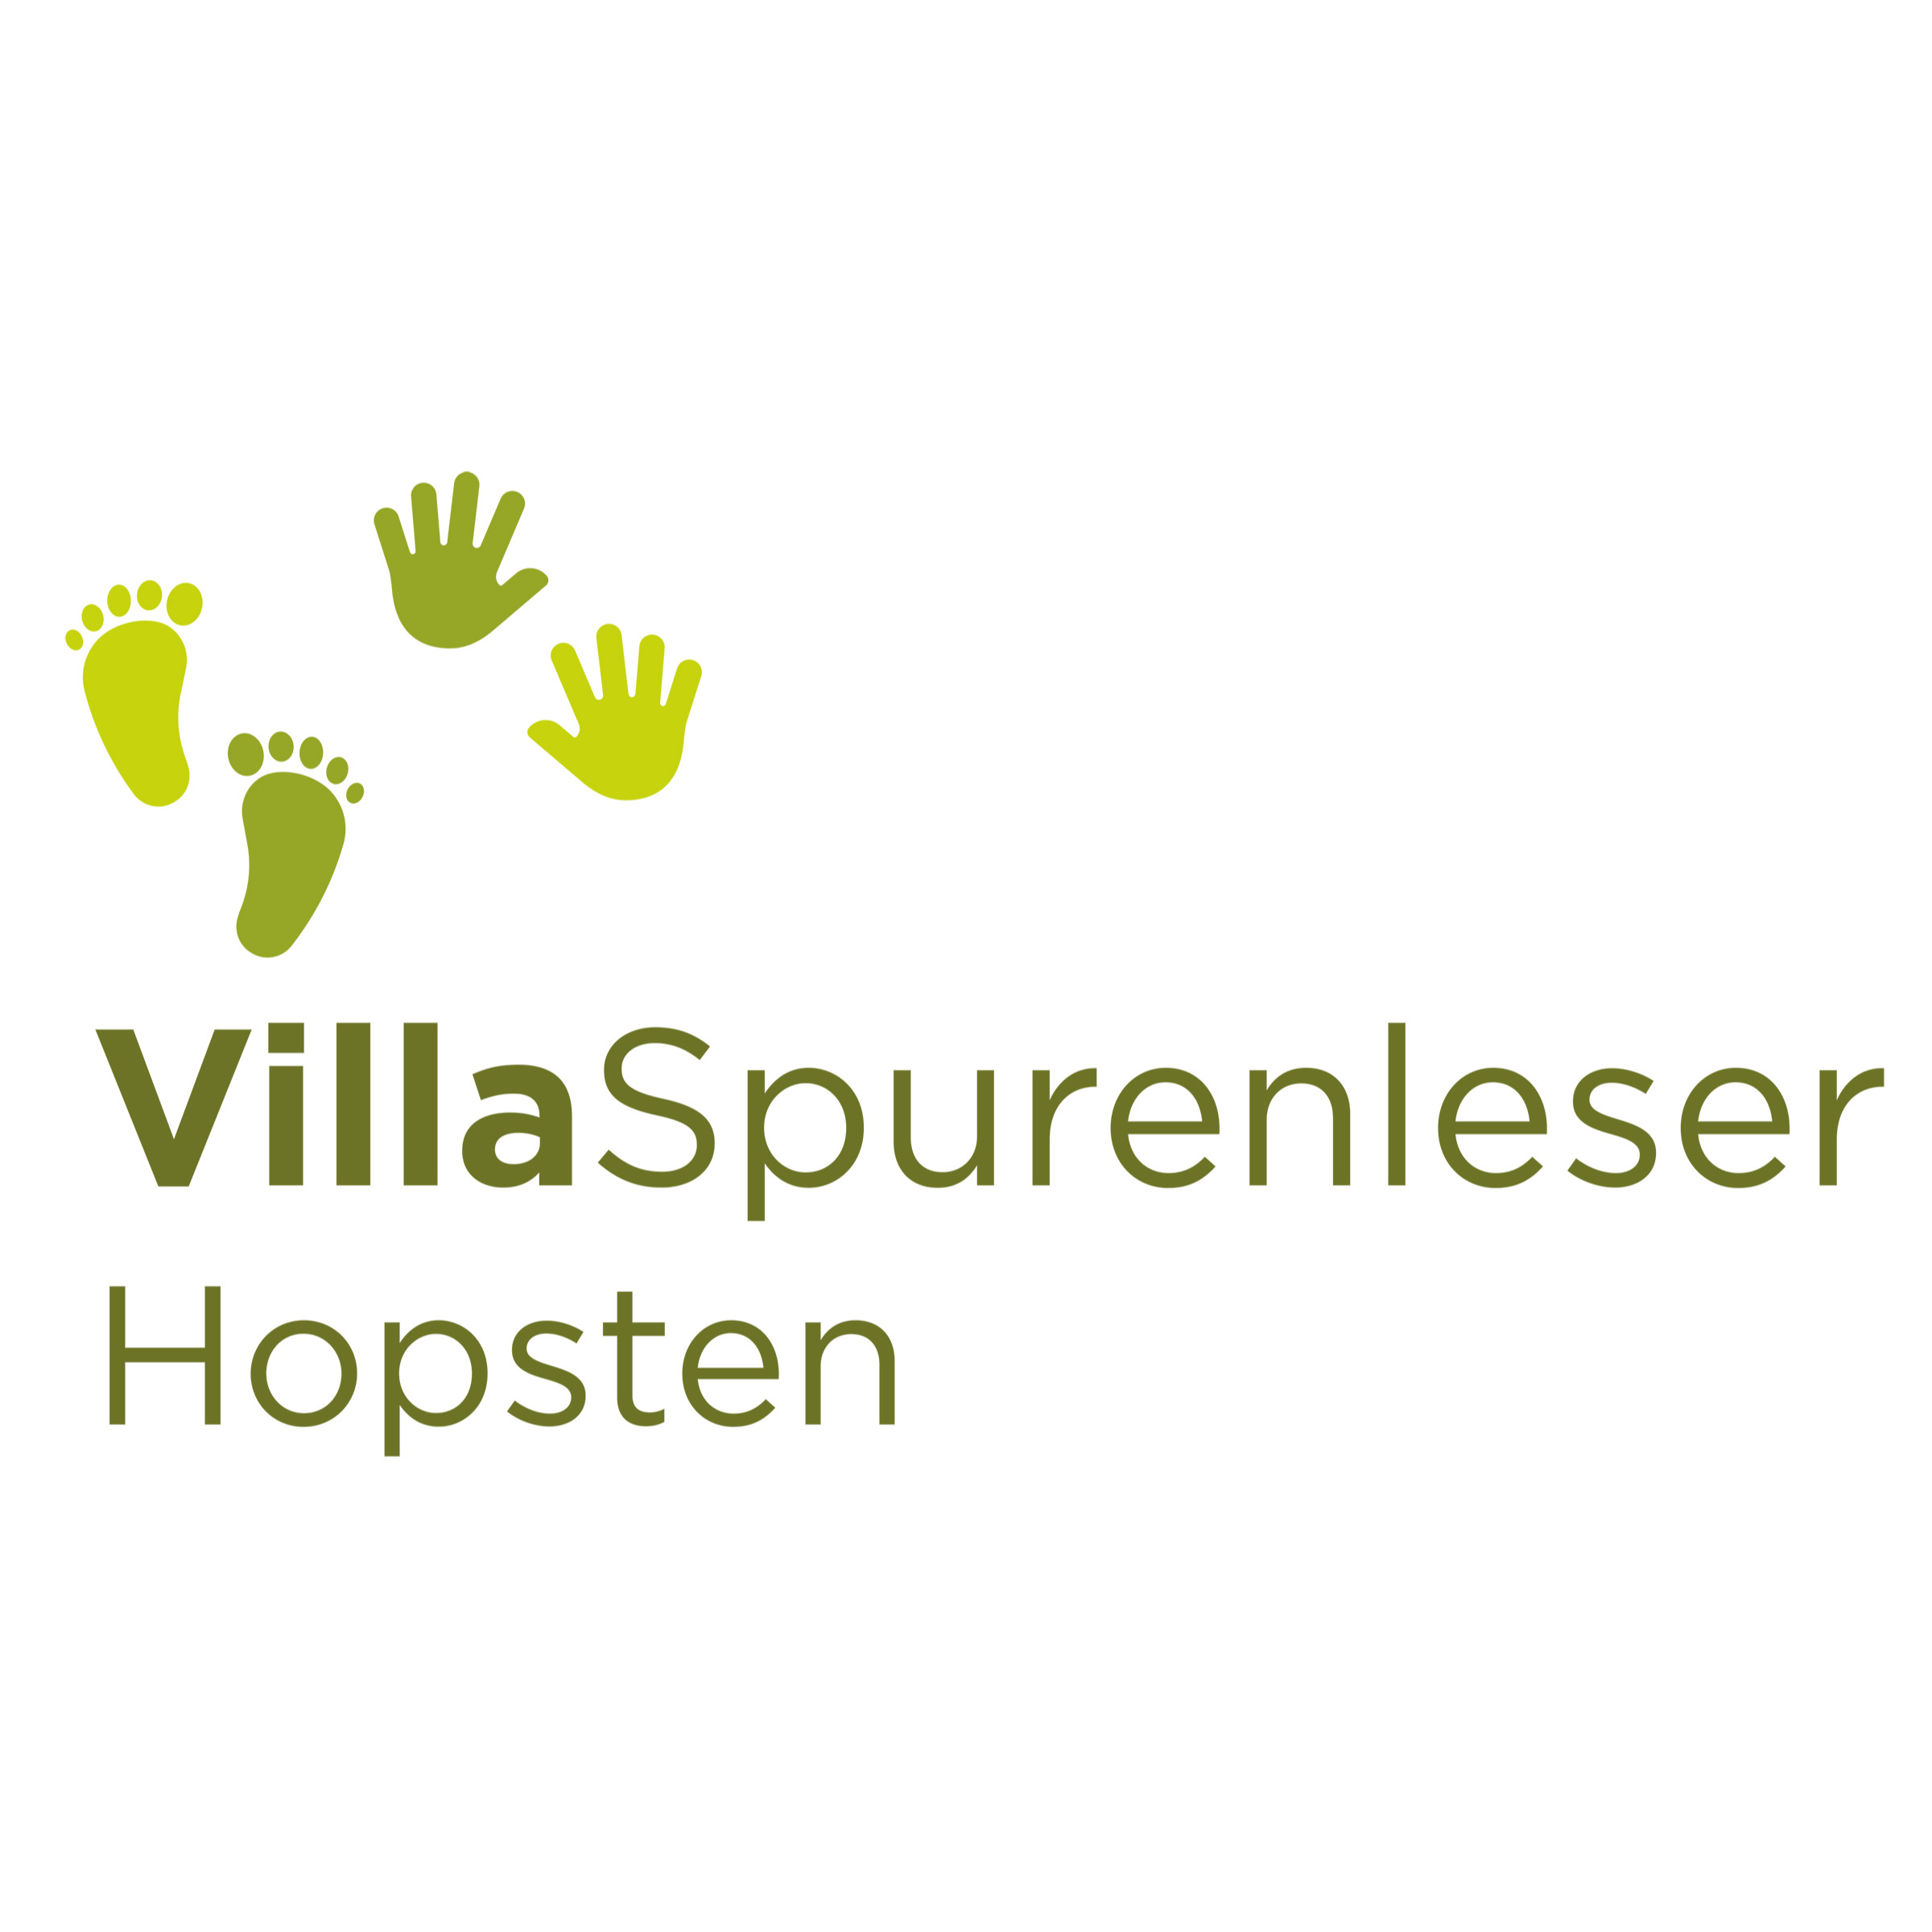 Logo Villa Spurenleser
Hopsten
pme Familienservice
global education
Kita